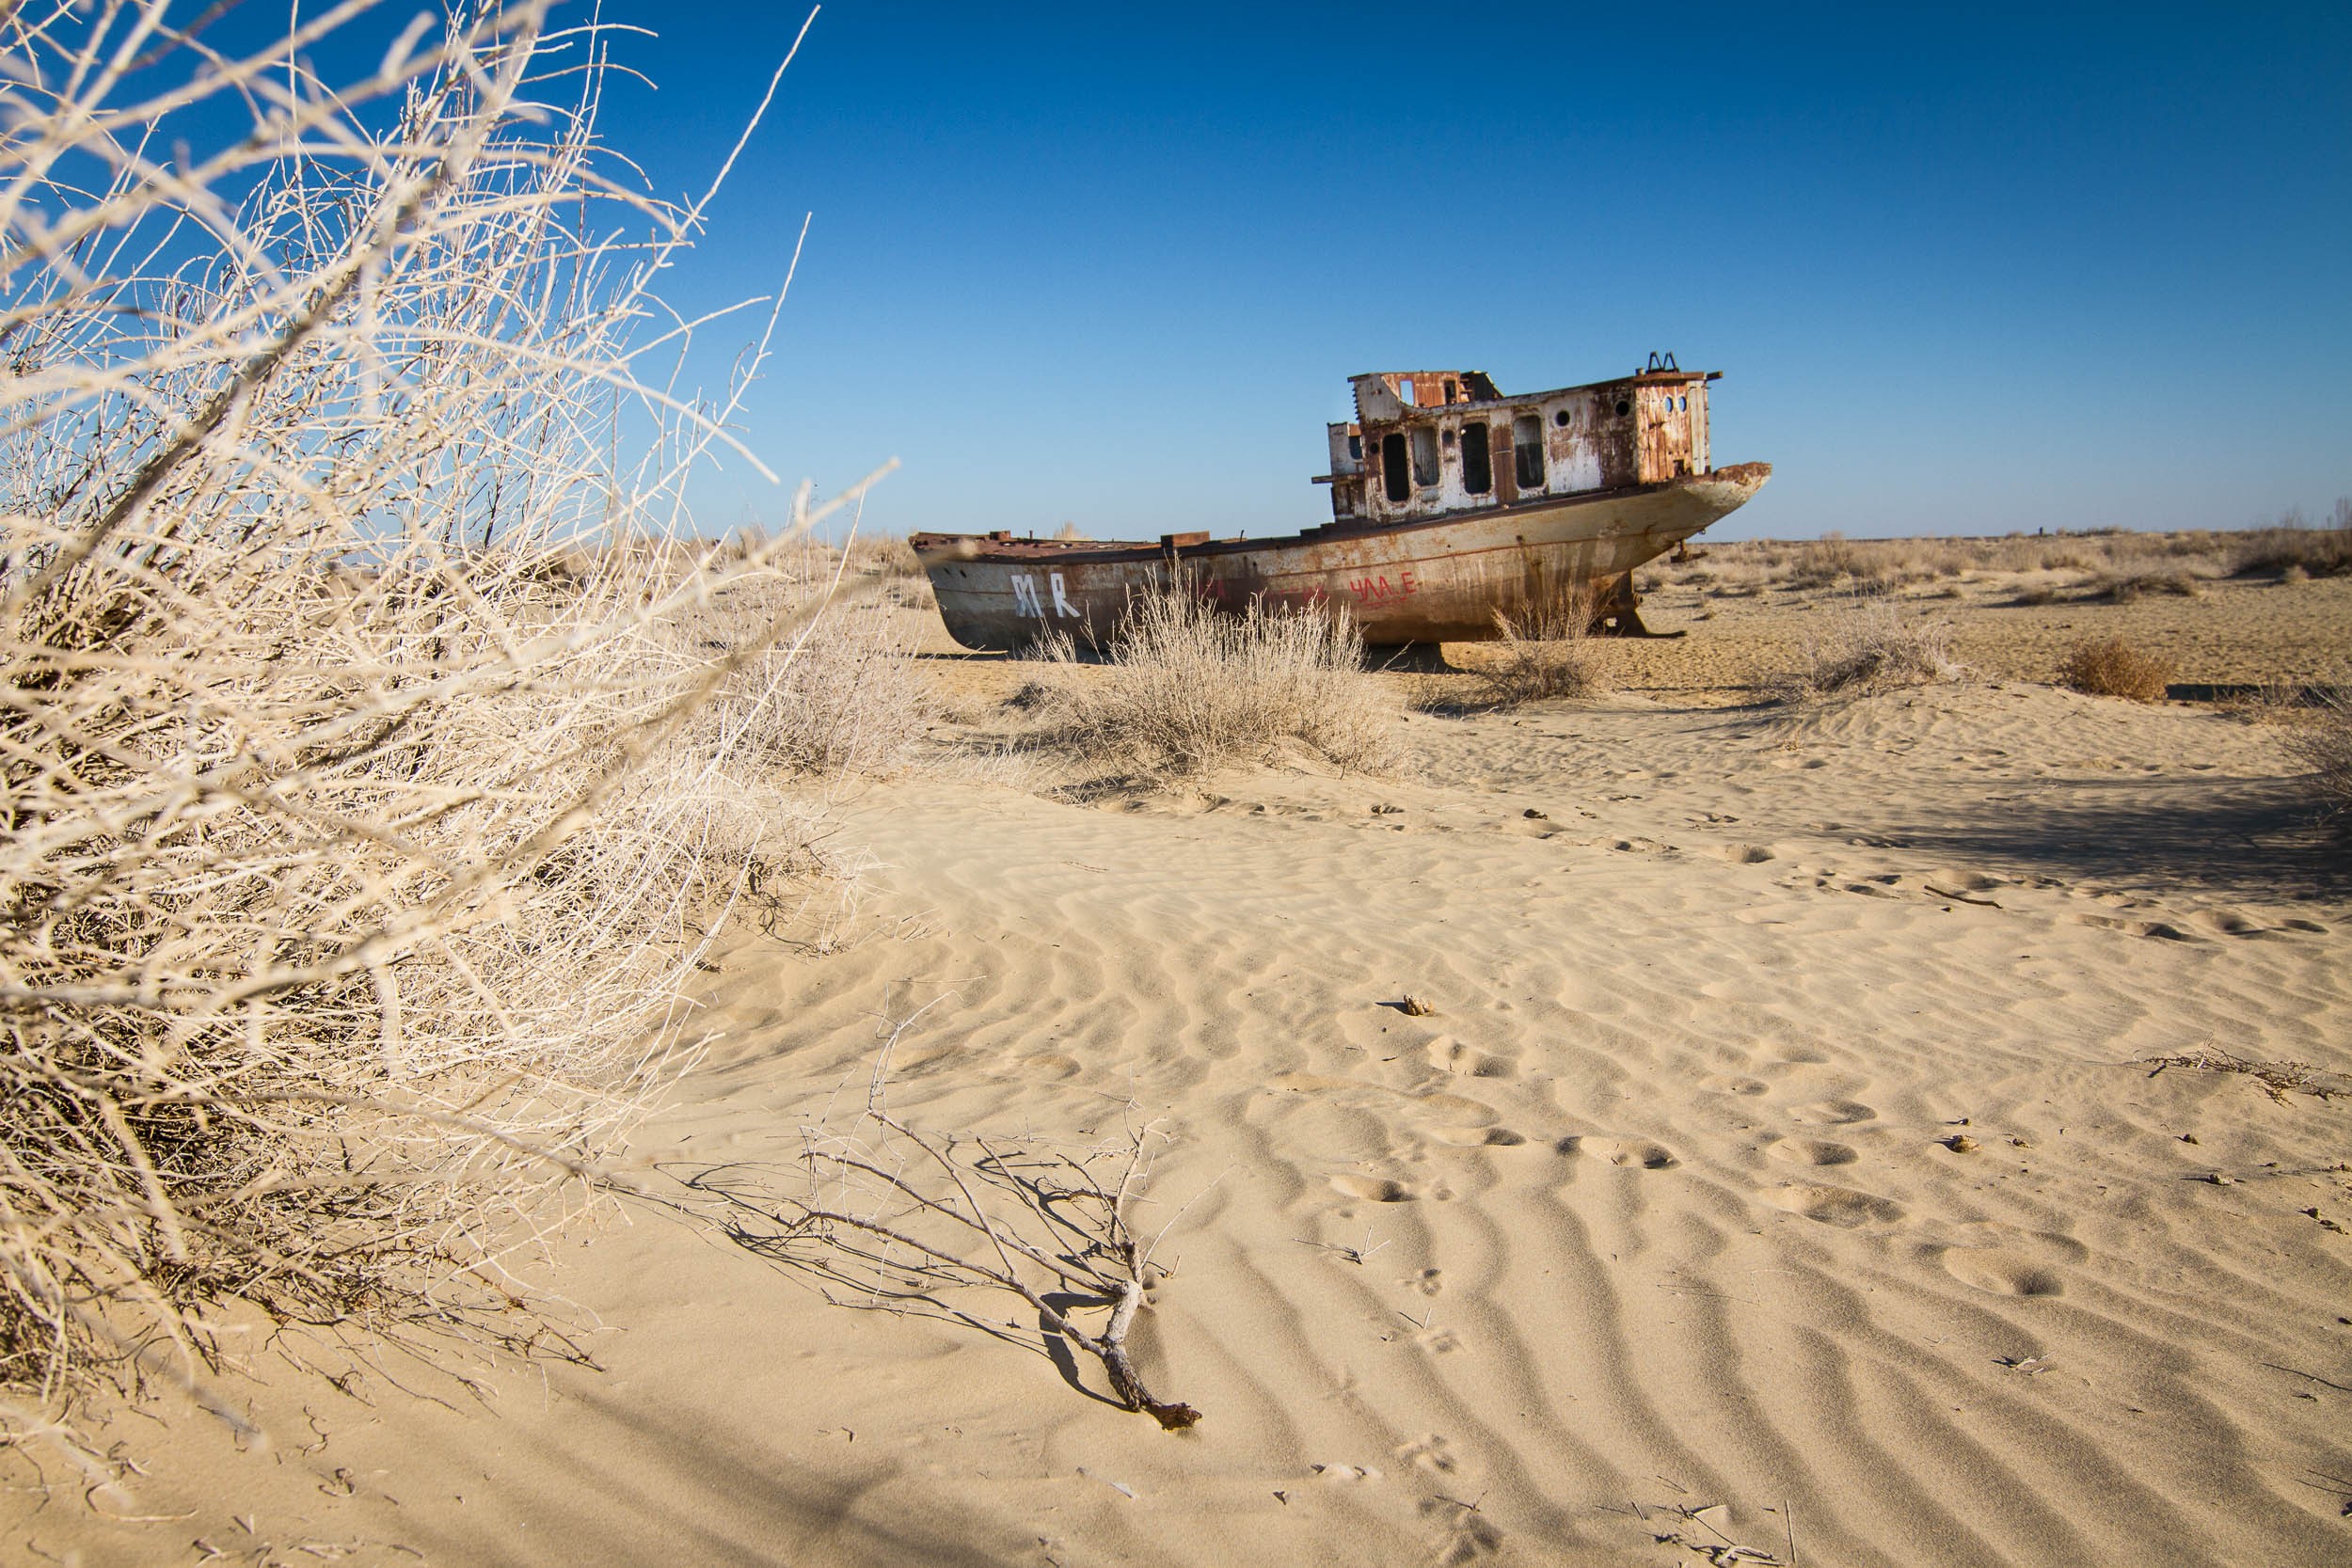 Aral Sea, Uzbekistan